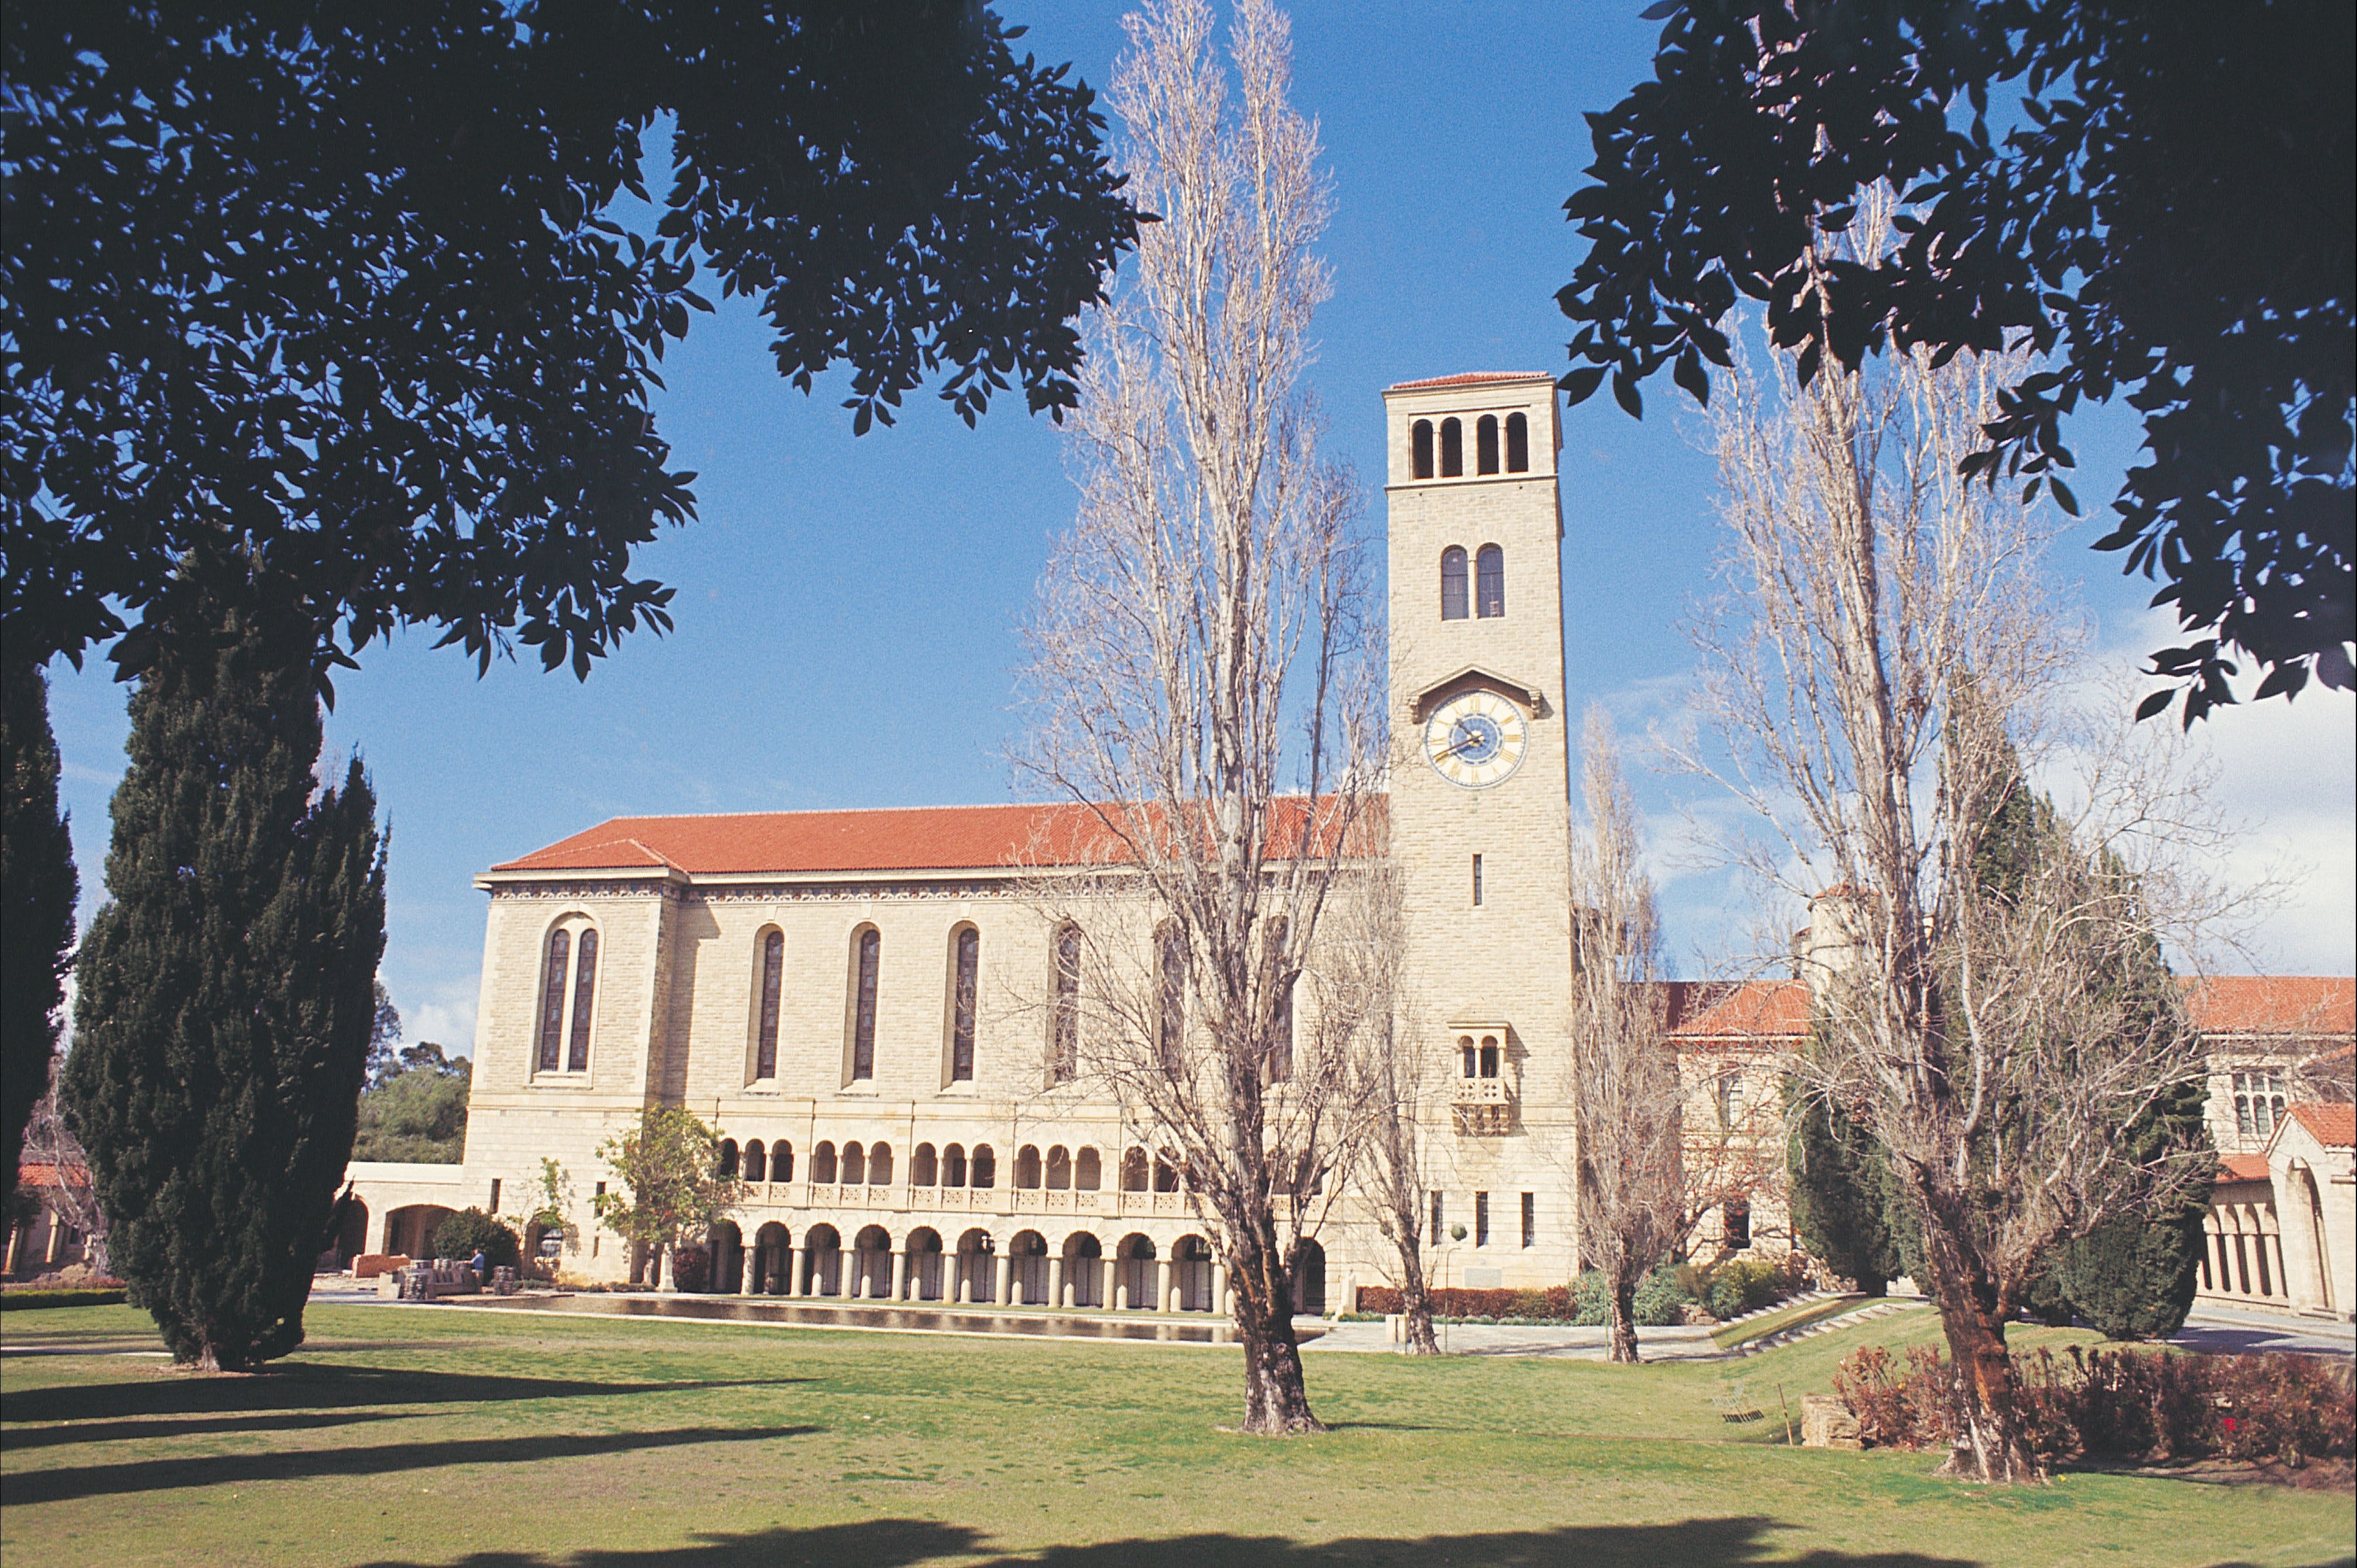 University of Western Australia - St Kilda Accommodation